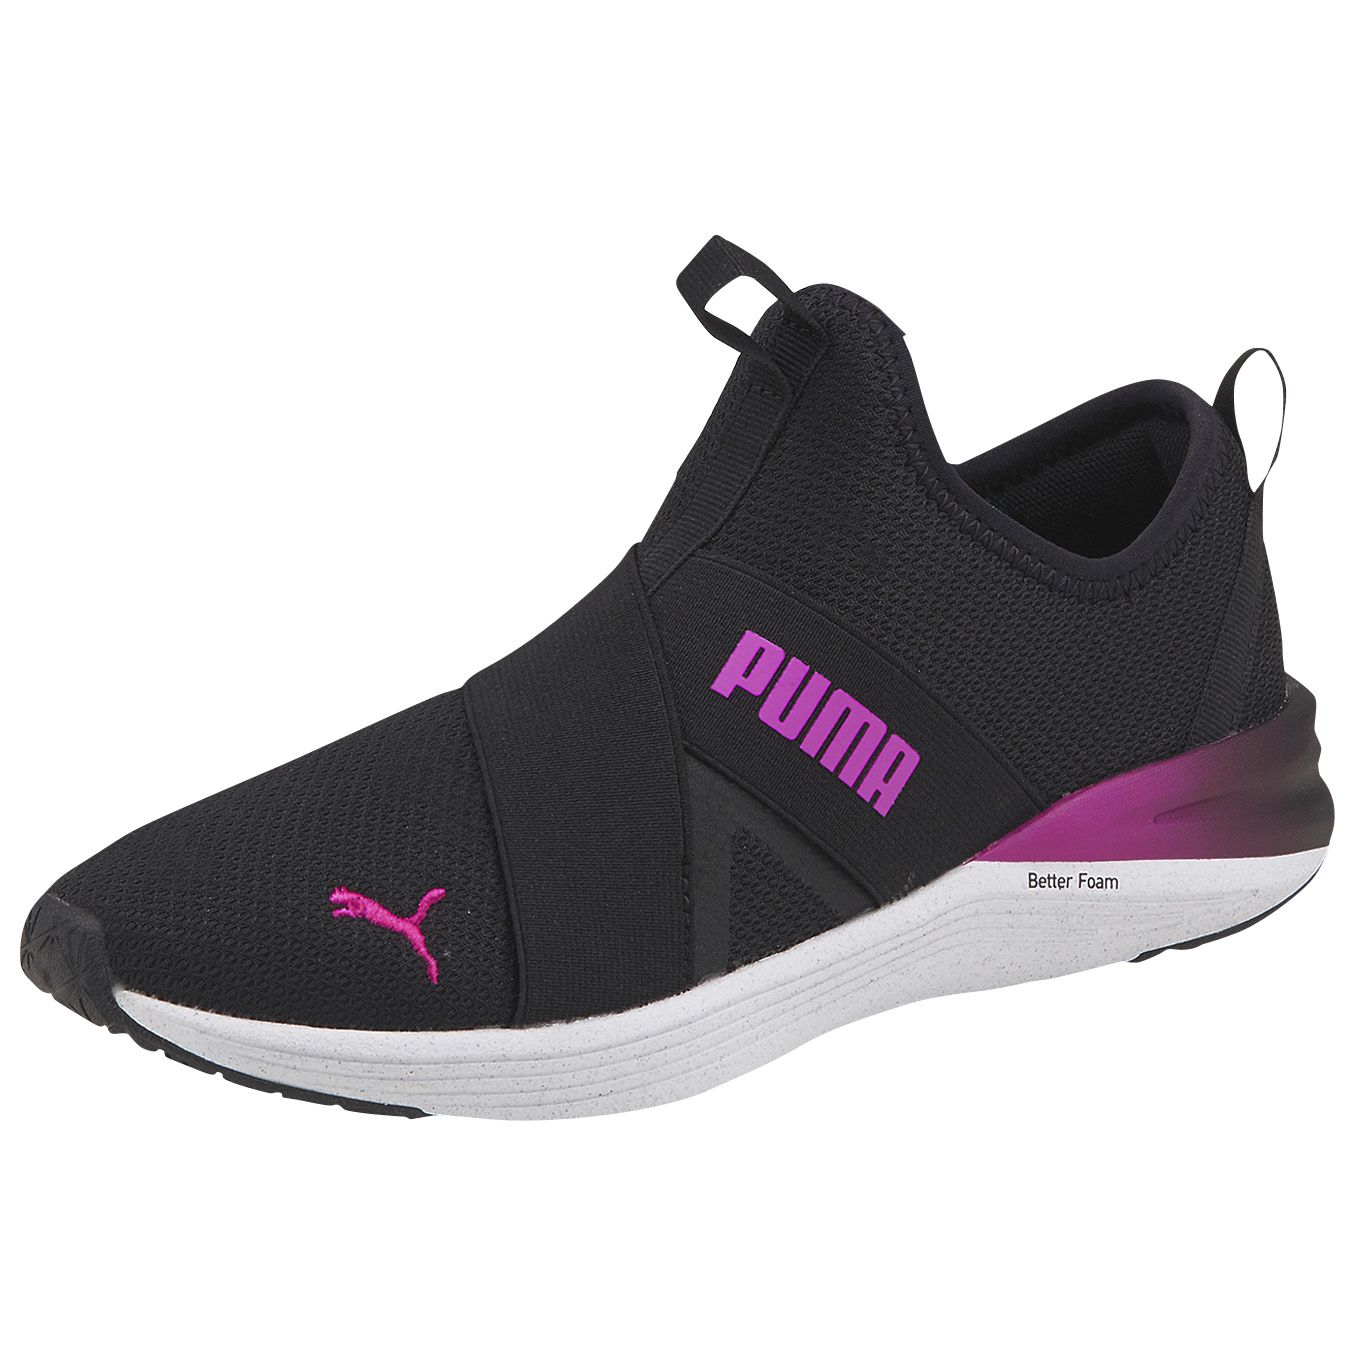 Fingerhut - PUMA Women's Better Foam Prowl Stardust Slip-On Sneaker